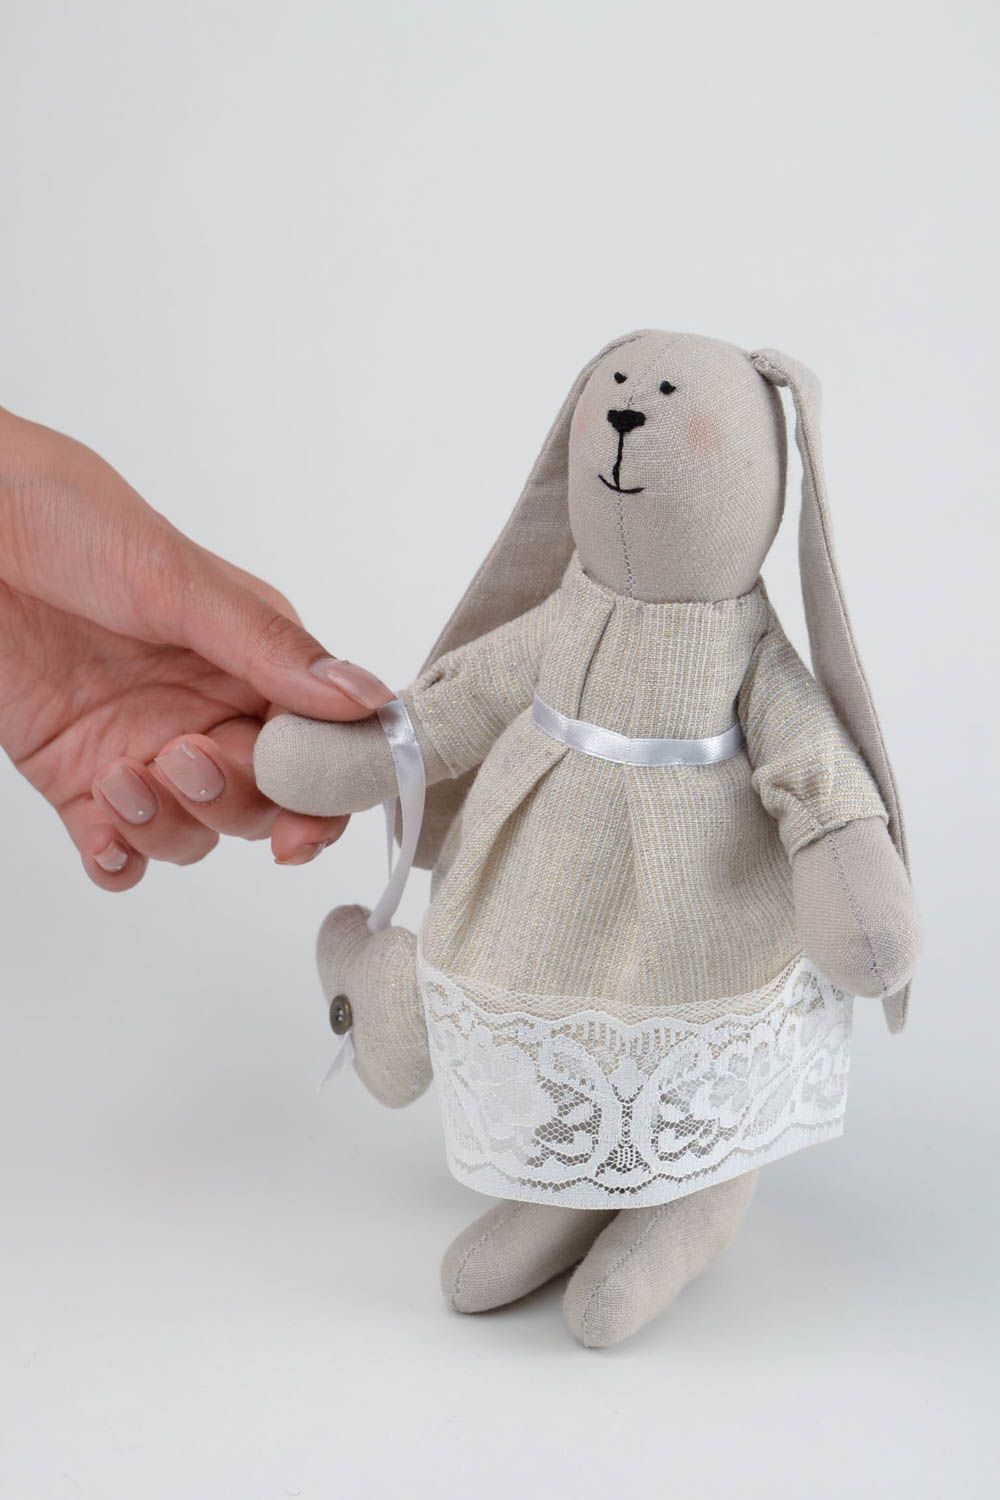 Игрушка заяц ручной работы авторская игрушка в кружевном платье стильный подарок фото 2